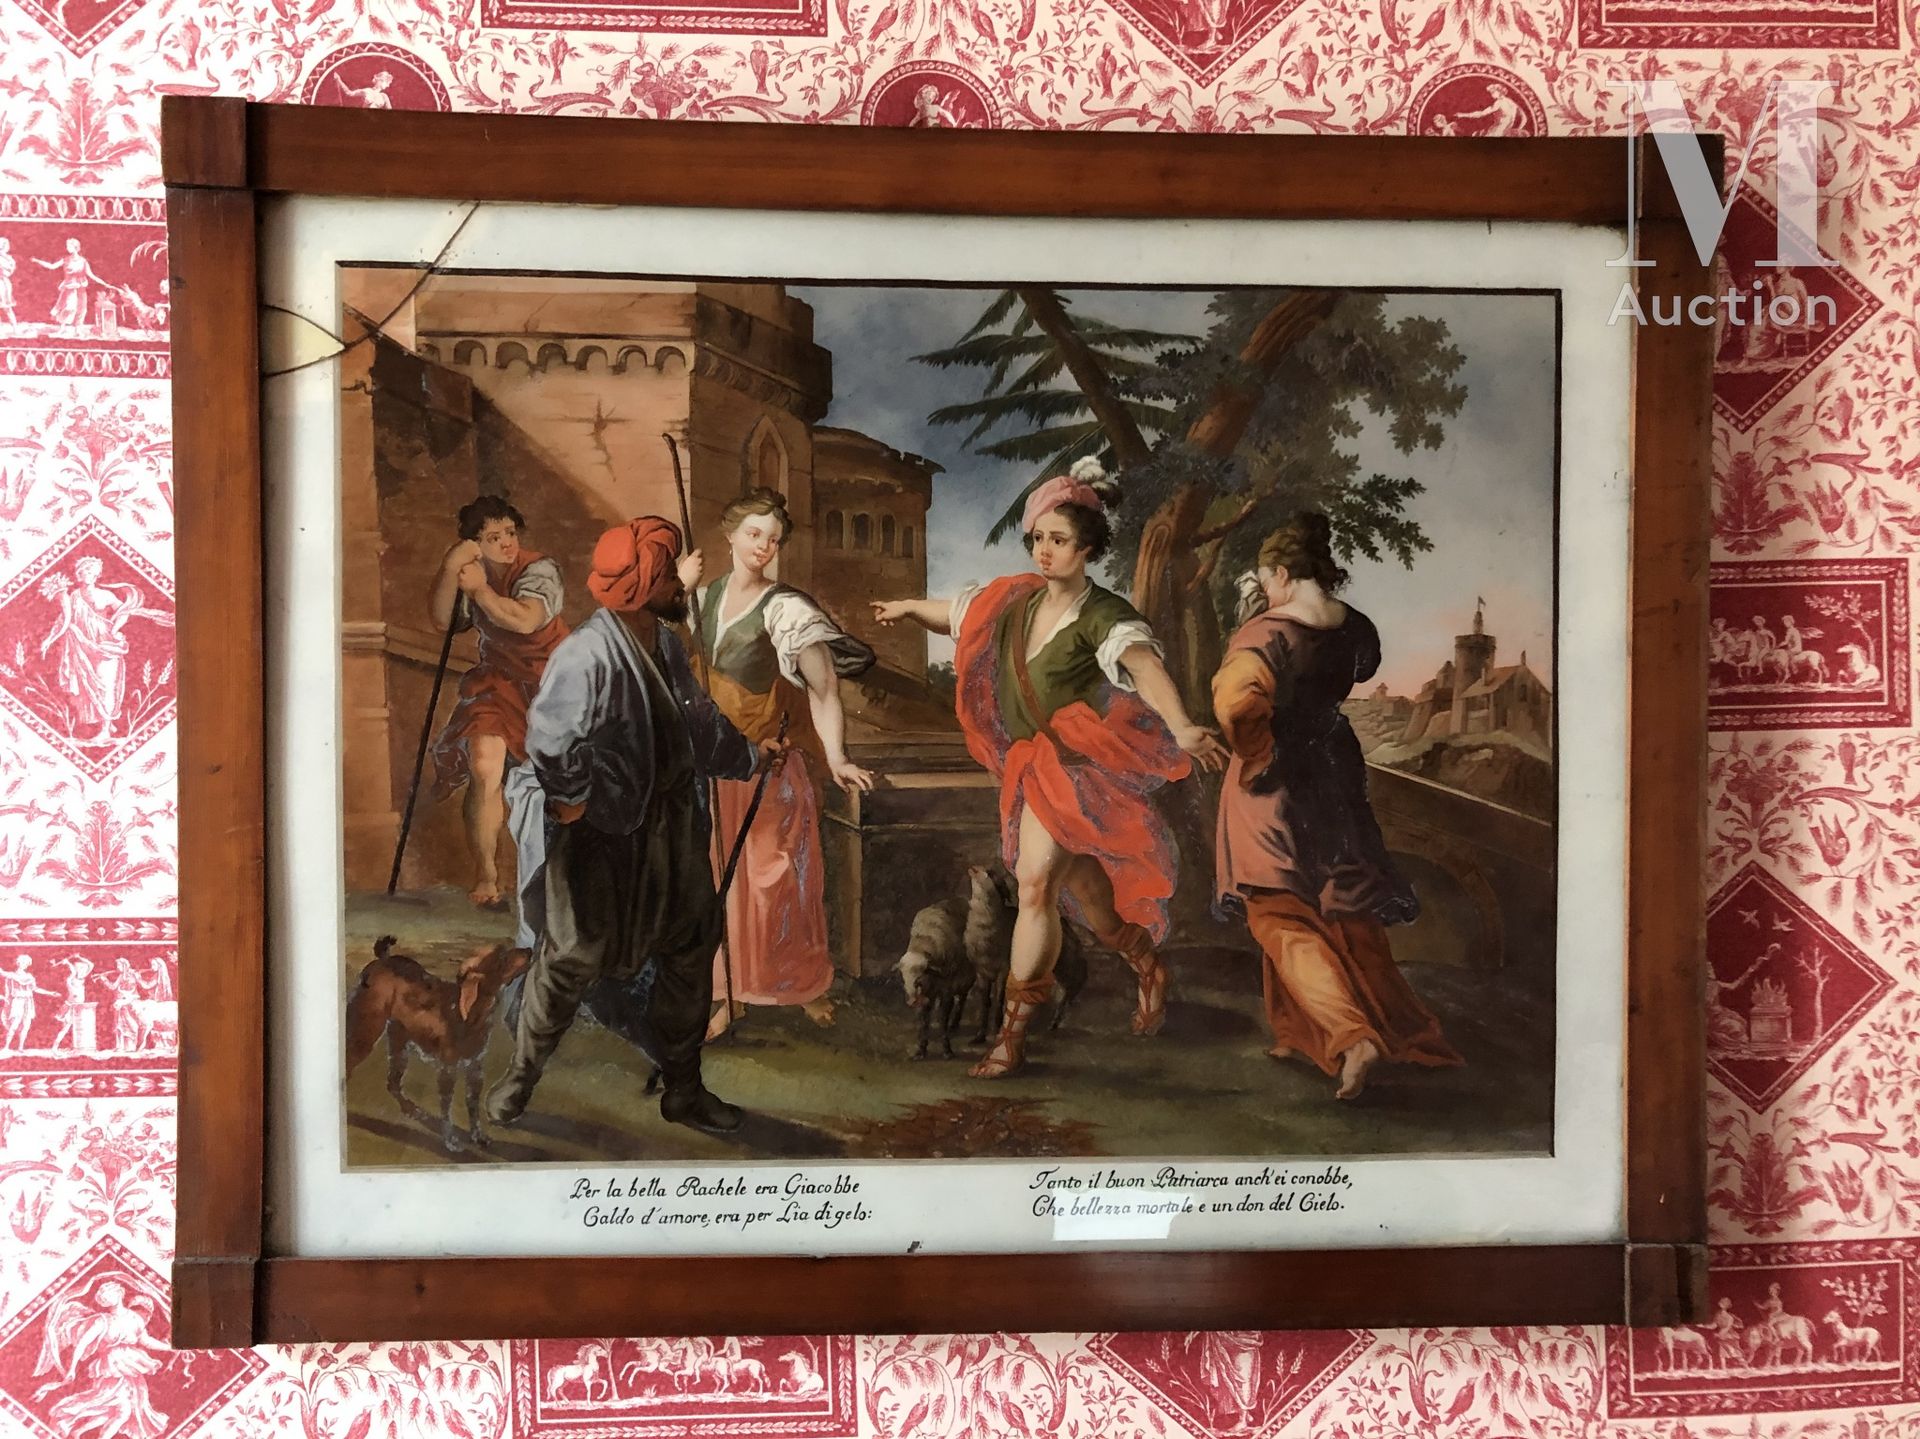 FIXE SOUS VERRE Rachel and Jacobé

18th century 

Accidents 

46 x 60 cm